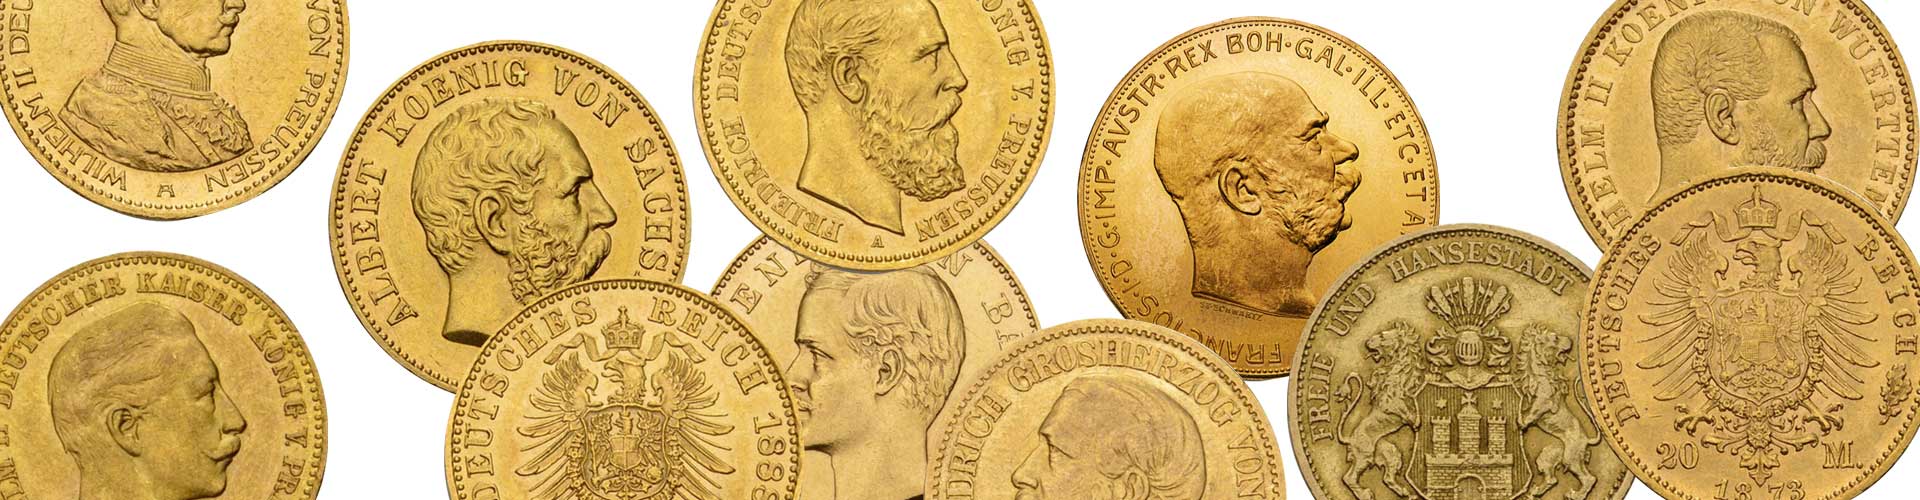 Verschiedene Goldmünzen und Goldanlagemünzen unter anderem aus dem deutschen Kaiserreich